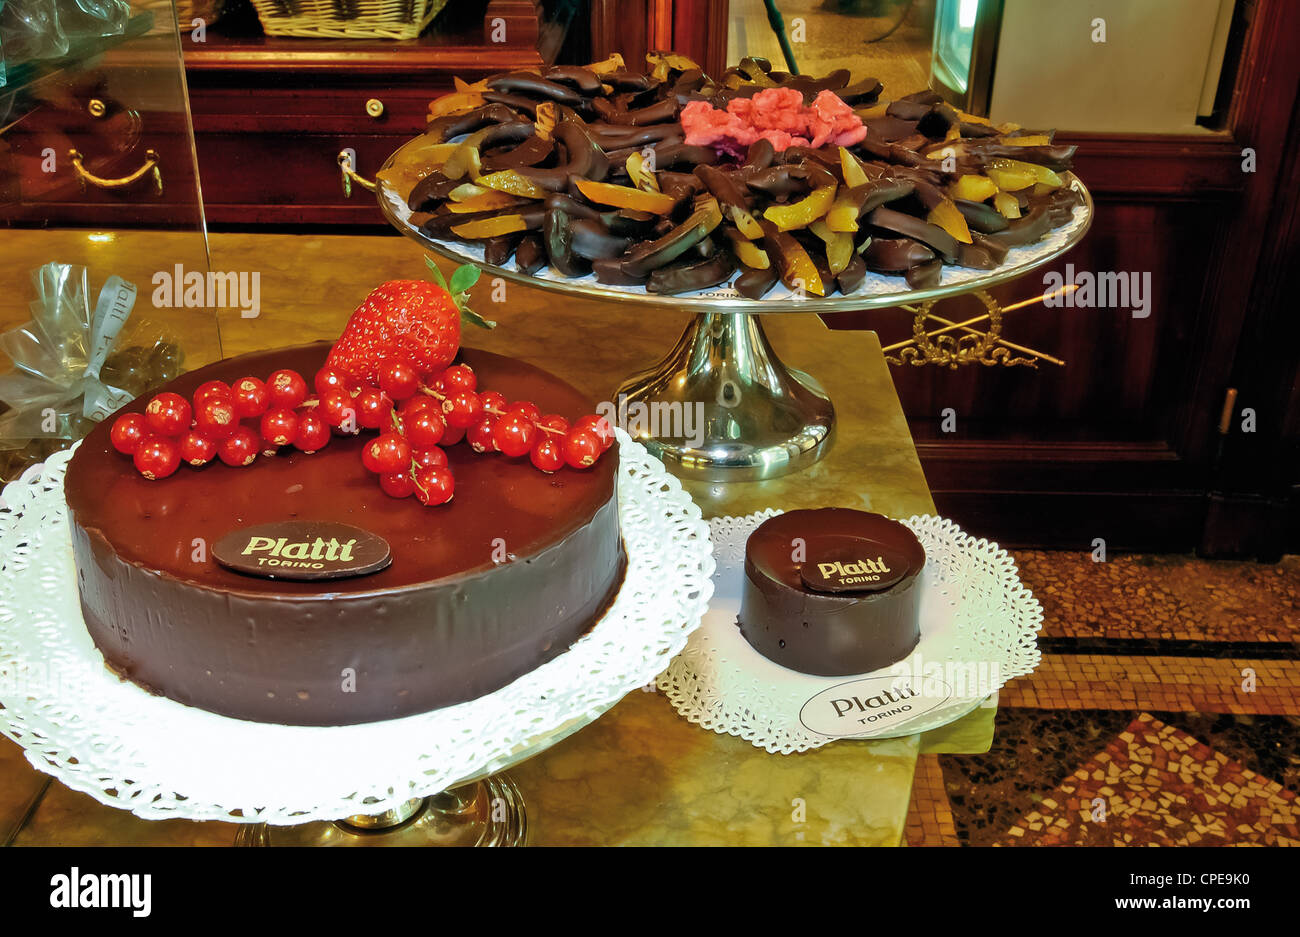 Europa Italia Piemonte Torino pasticceria Platti torte al cioccolato Foto stock - Alamy